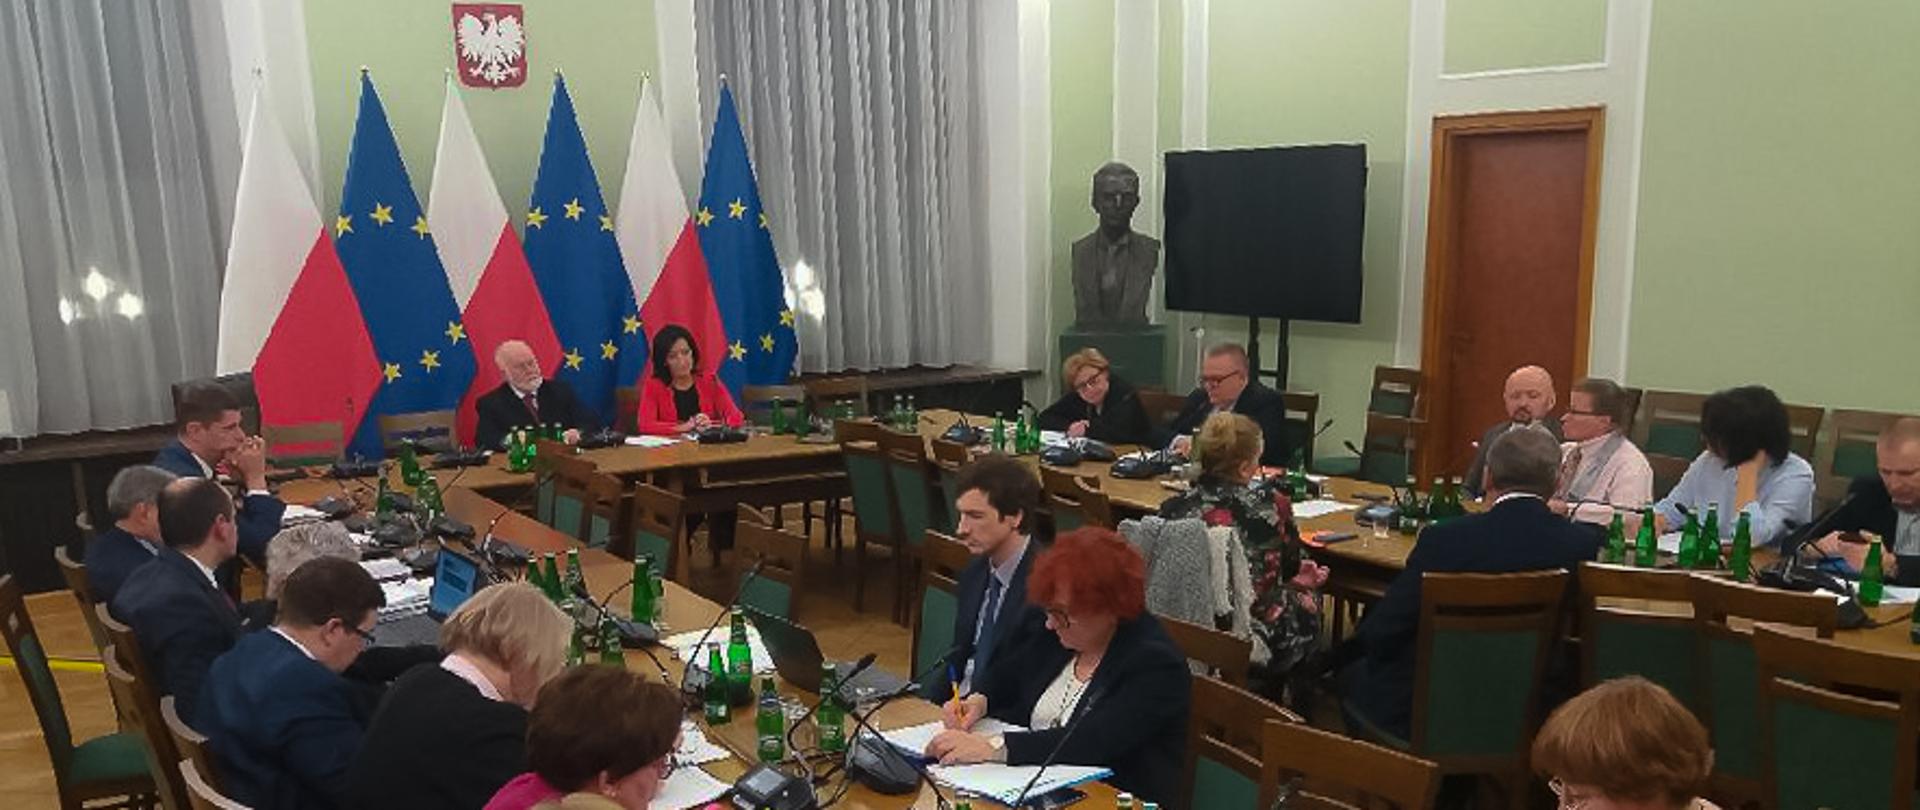 Posiedzenie Komisji Edukacji Nauki i Sportu Senatu RP z udziałem ministra edukacji. Ludzie siedzą przy stołach, pochylają się nad dokumentami i dyskutują. W tle flagi Polski oraz Unii Europejskiej.